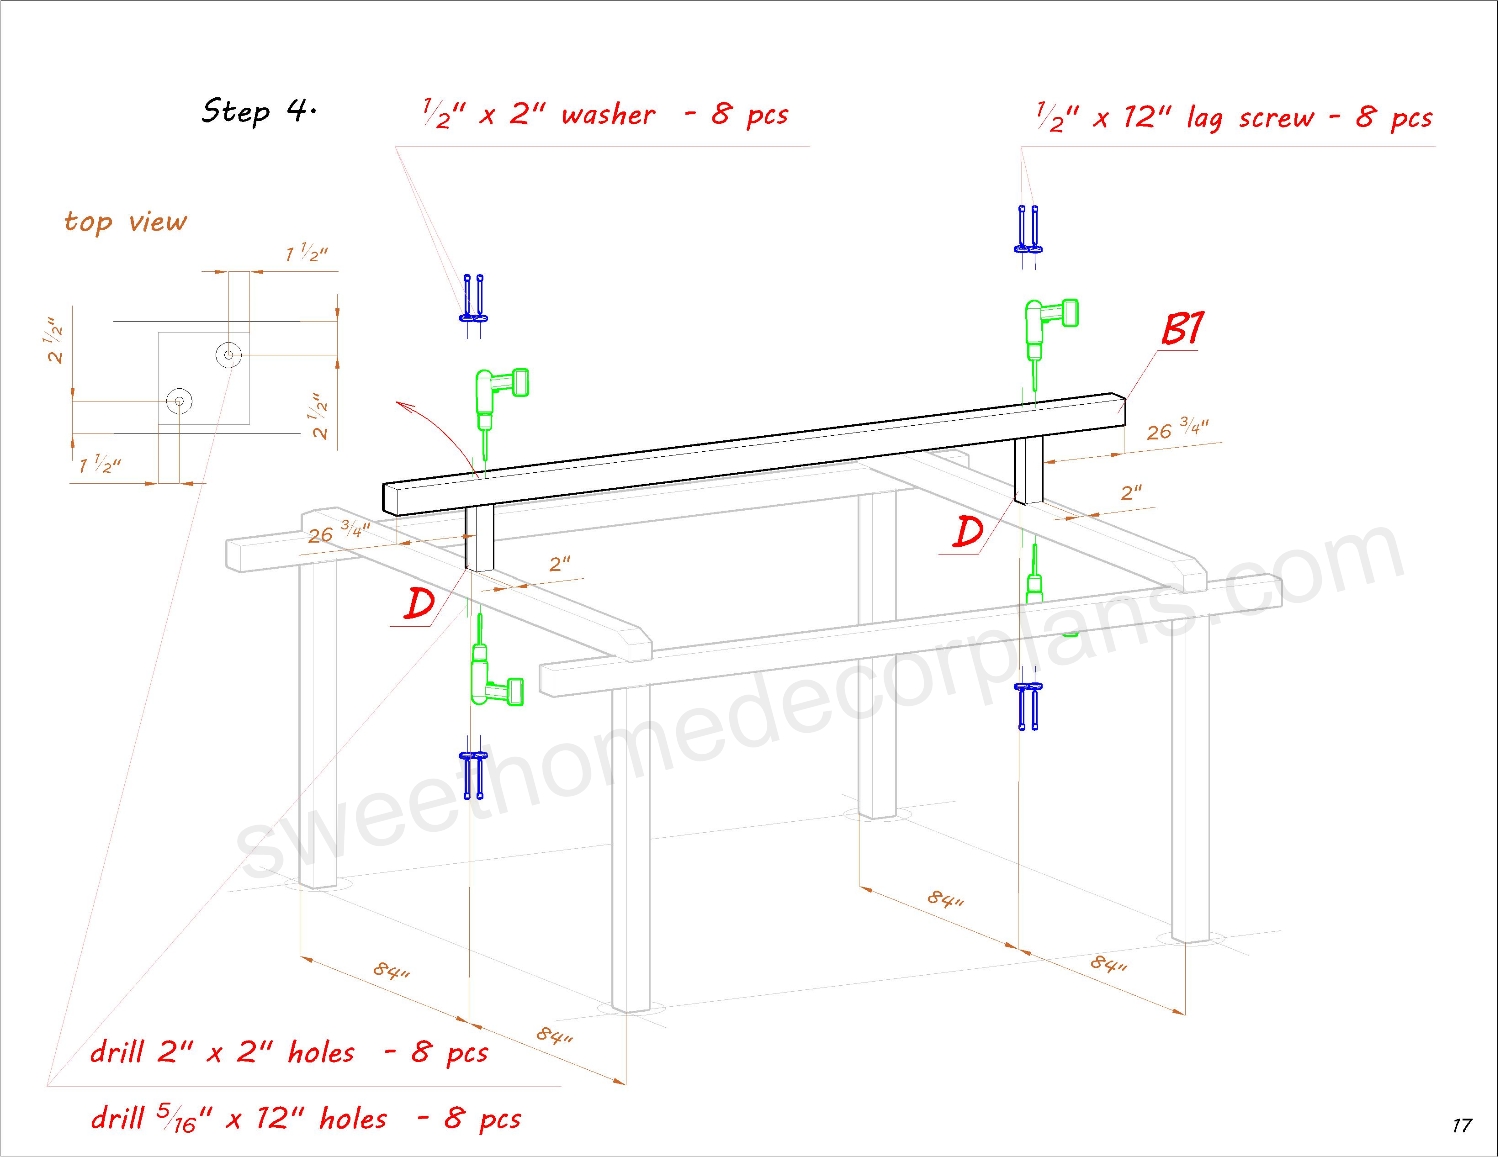 Assembly-diagram-wooden-14-х-14-gable-pavilion-plans-carport-gazebo